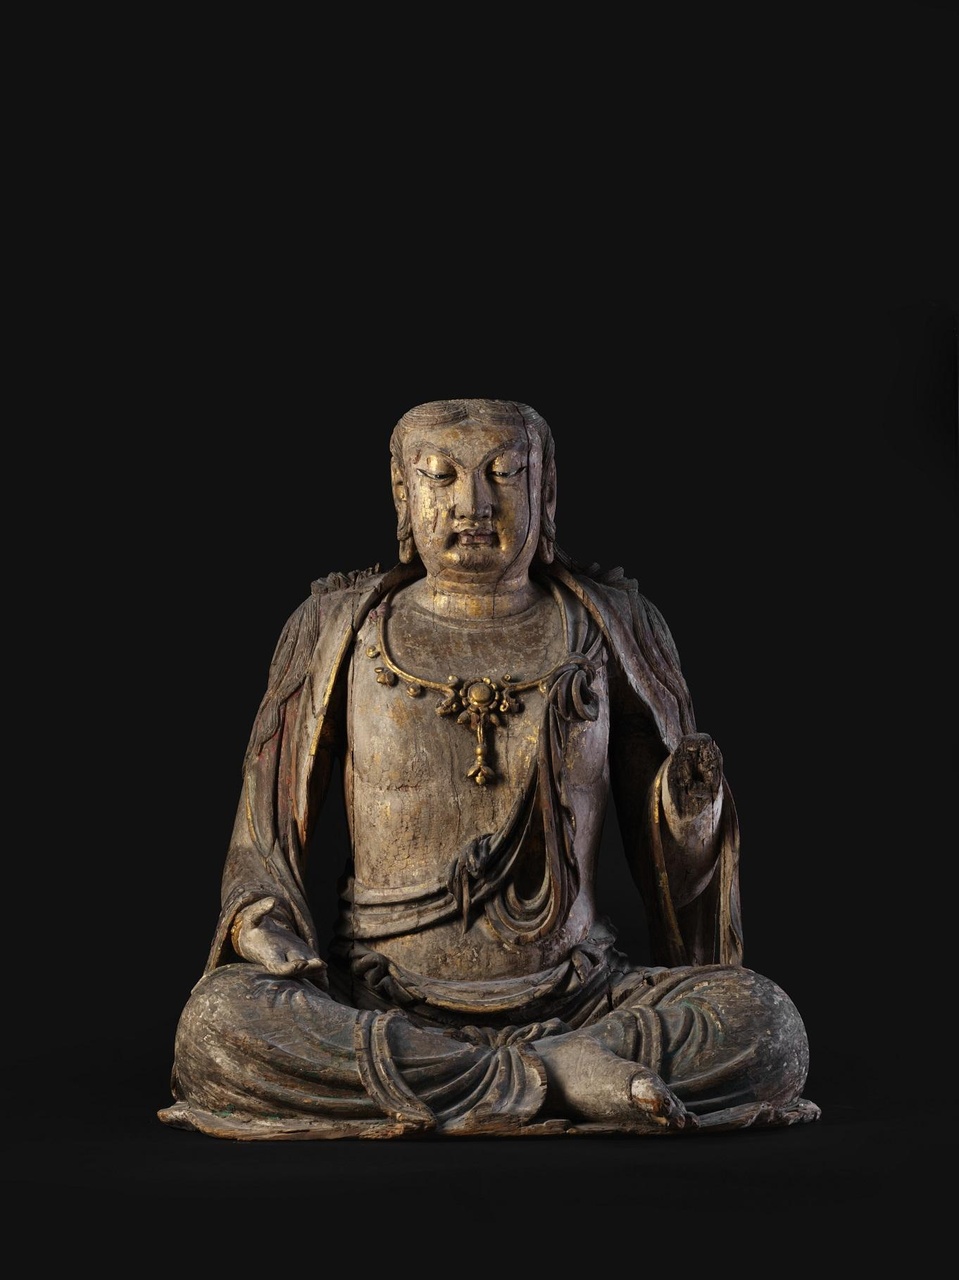 金 木雕彩繪漆金觀音像
此尊菩薩之梵文名稱為「Avalokiteshvara」，在中國則稱為「觀音」或「觀世音菩薩」，乃大慈大悲之化身。本尊觀音像雙目低垂，面容沉靜安詳亦不失威嚴，而其法身與衣飾造型自然，姿態自在閒適，令人可親 。
估價：1,000,000-1,500,000歐元
*此拍品將於8月1至7日來港展出
